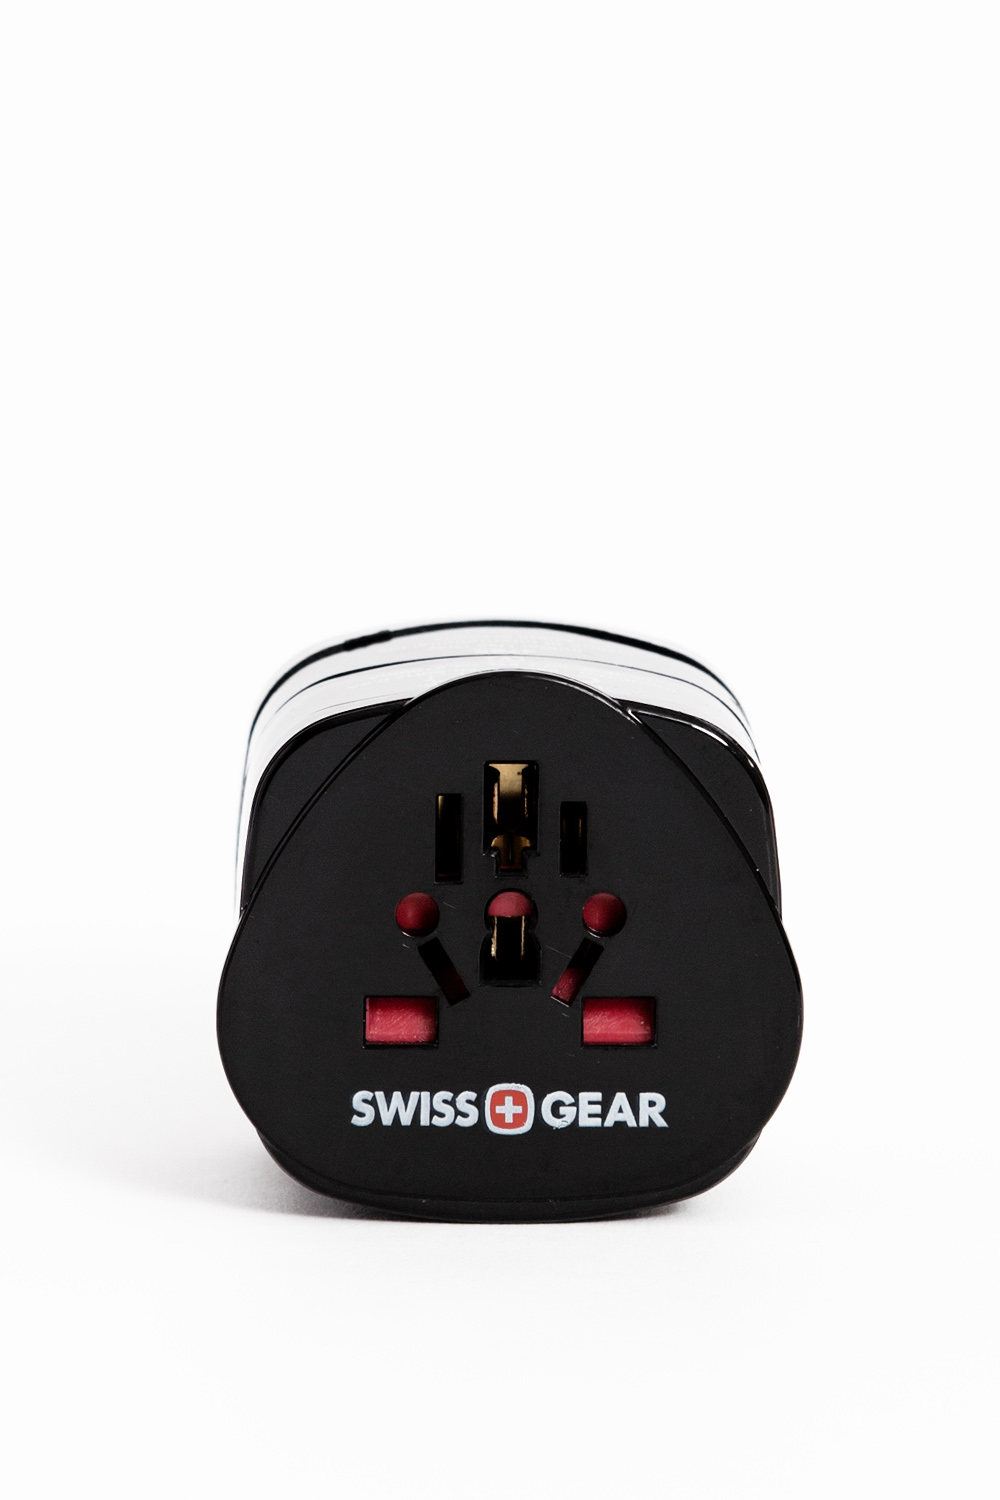 Swiss Gear International Worldwide Travel Adapter Plug WJ3172BK Swiss+Gear NEW 